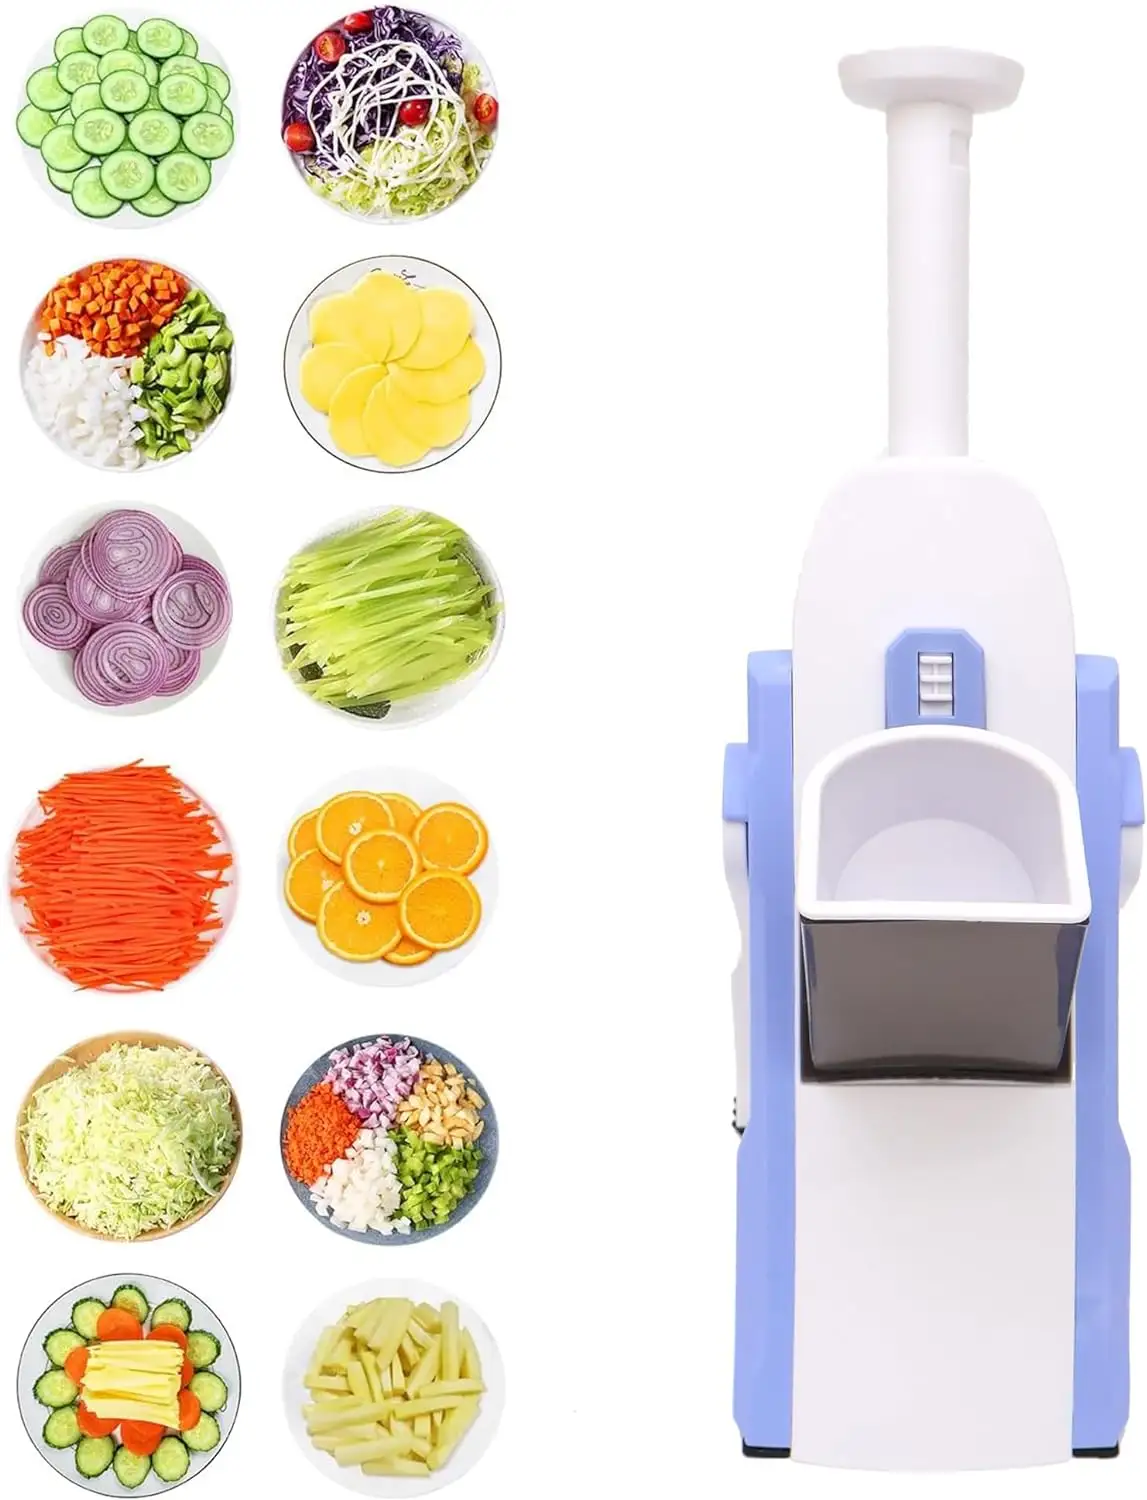 Mandoline Food Slicer For Kitchen - Adjustable Potato Slicer Vegetable Chopper French Fry Cutter